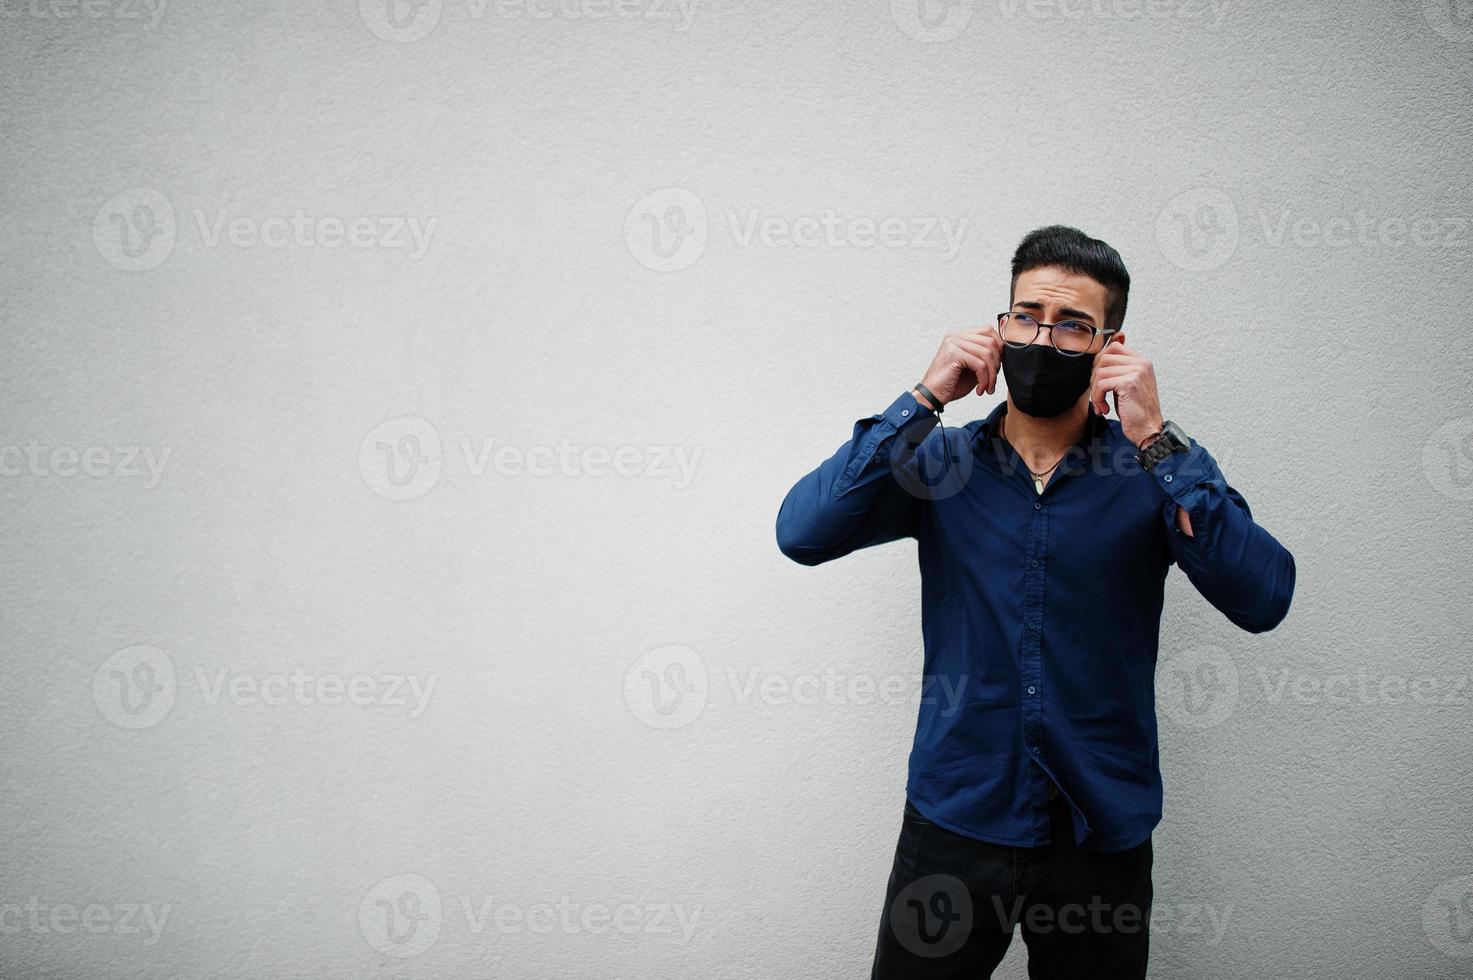 Unternehmer aus dem Nahen Osten tragen eine schwarze Gesichtsmaske und eine Brille vor einer weißen Wand. neues normales Leben nach der Coronavirus-Pandemie. foto